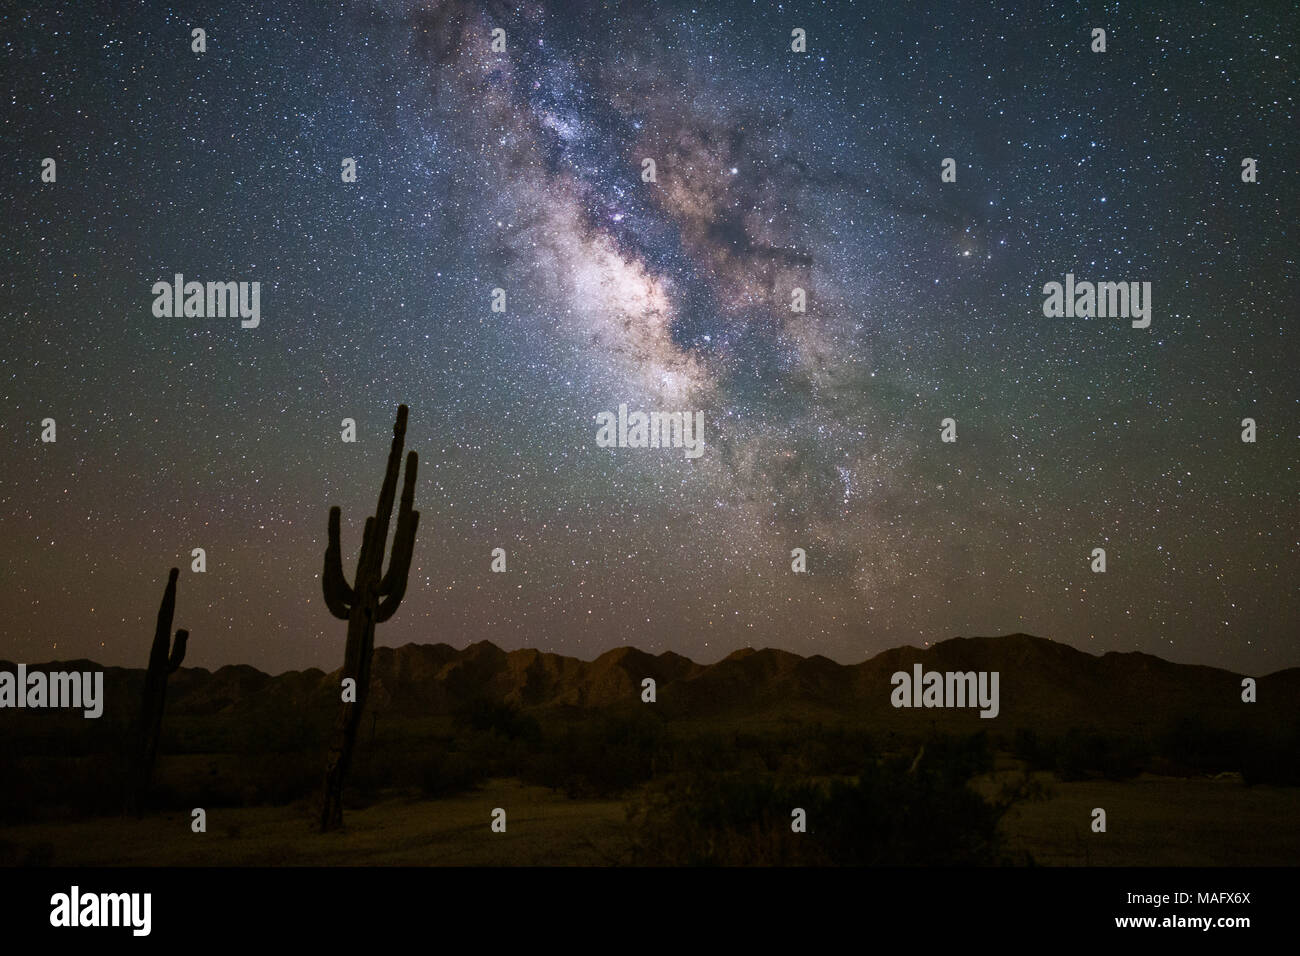 Voie lactée galaxie dans le ciel nocturne au-dessus d'un cactus Saguaro dans le désert de Sonoran près de Phoenix, Arizona Banque D'Images